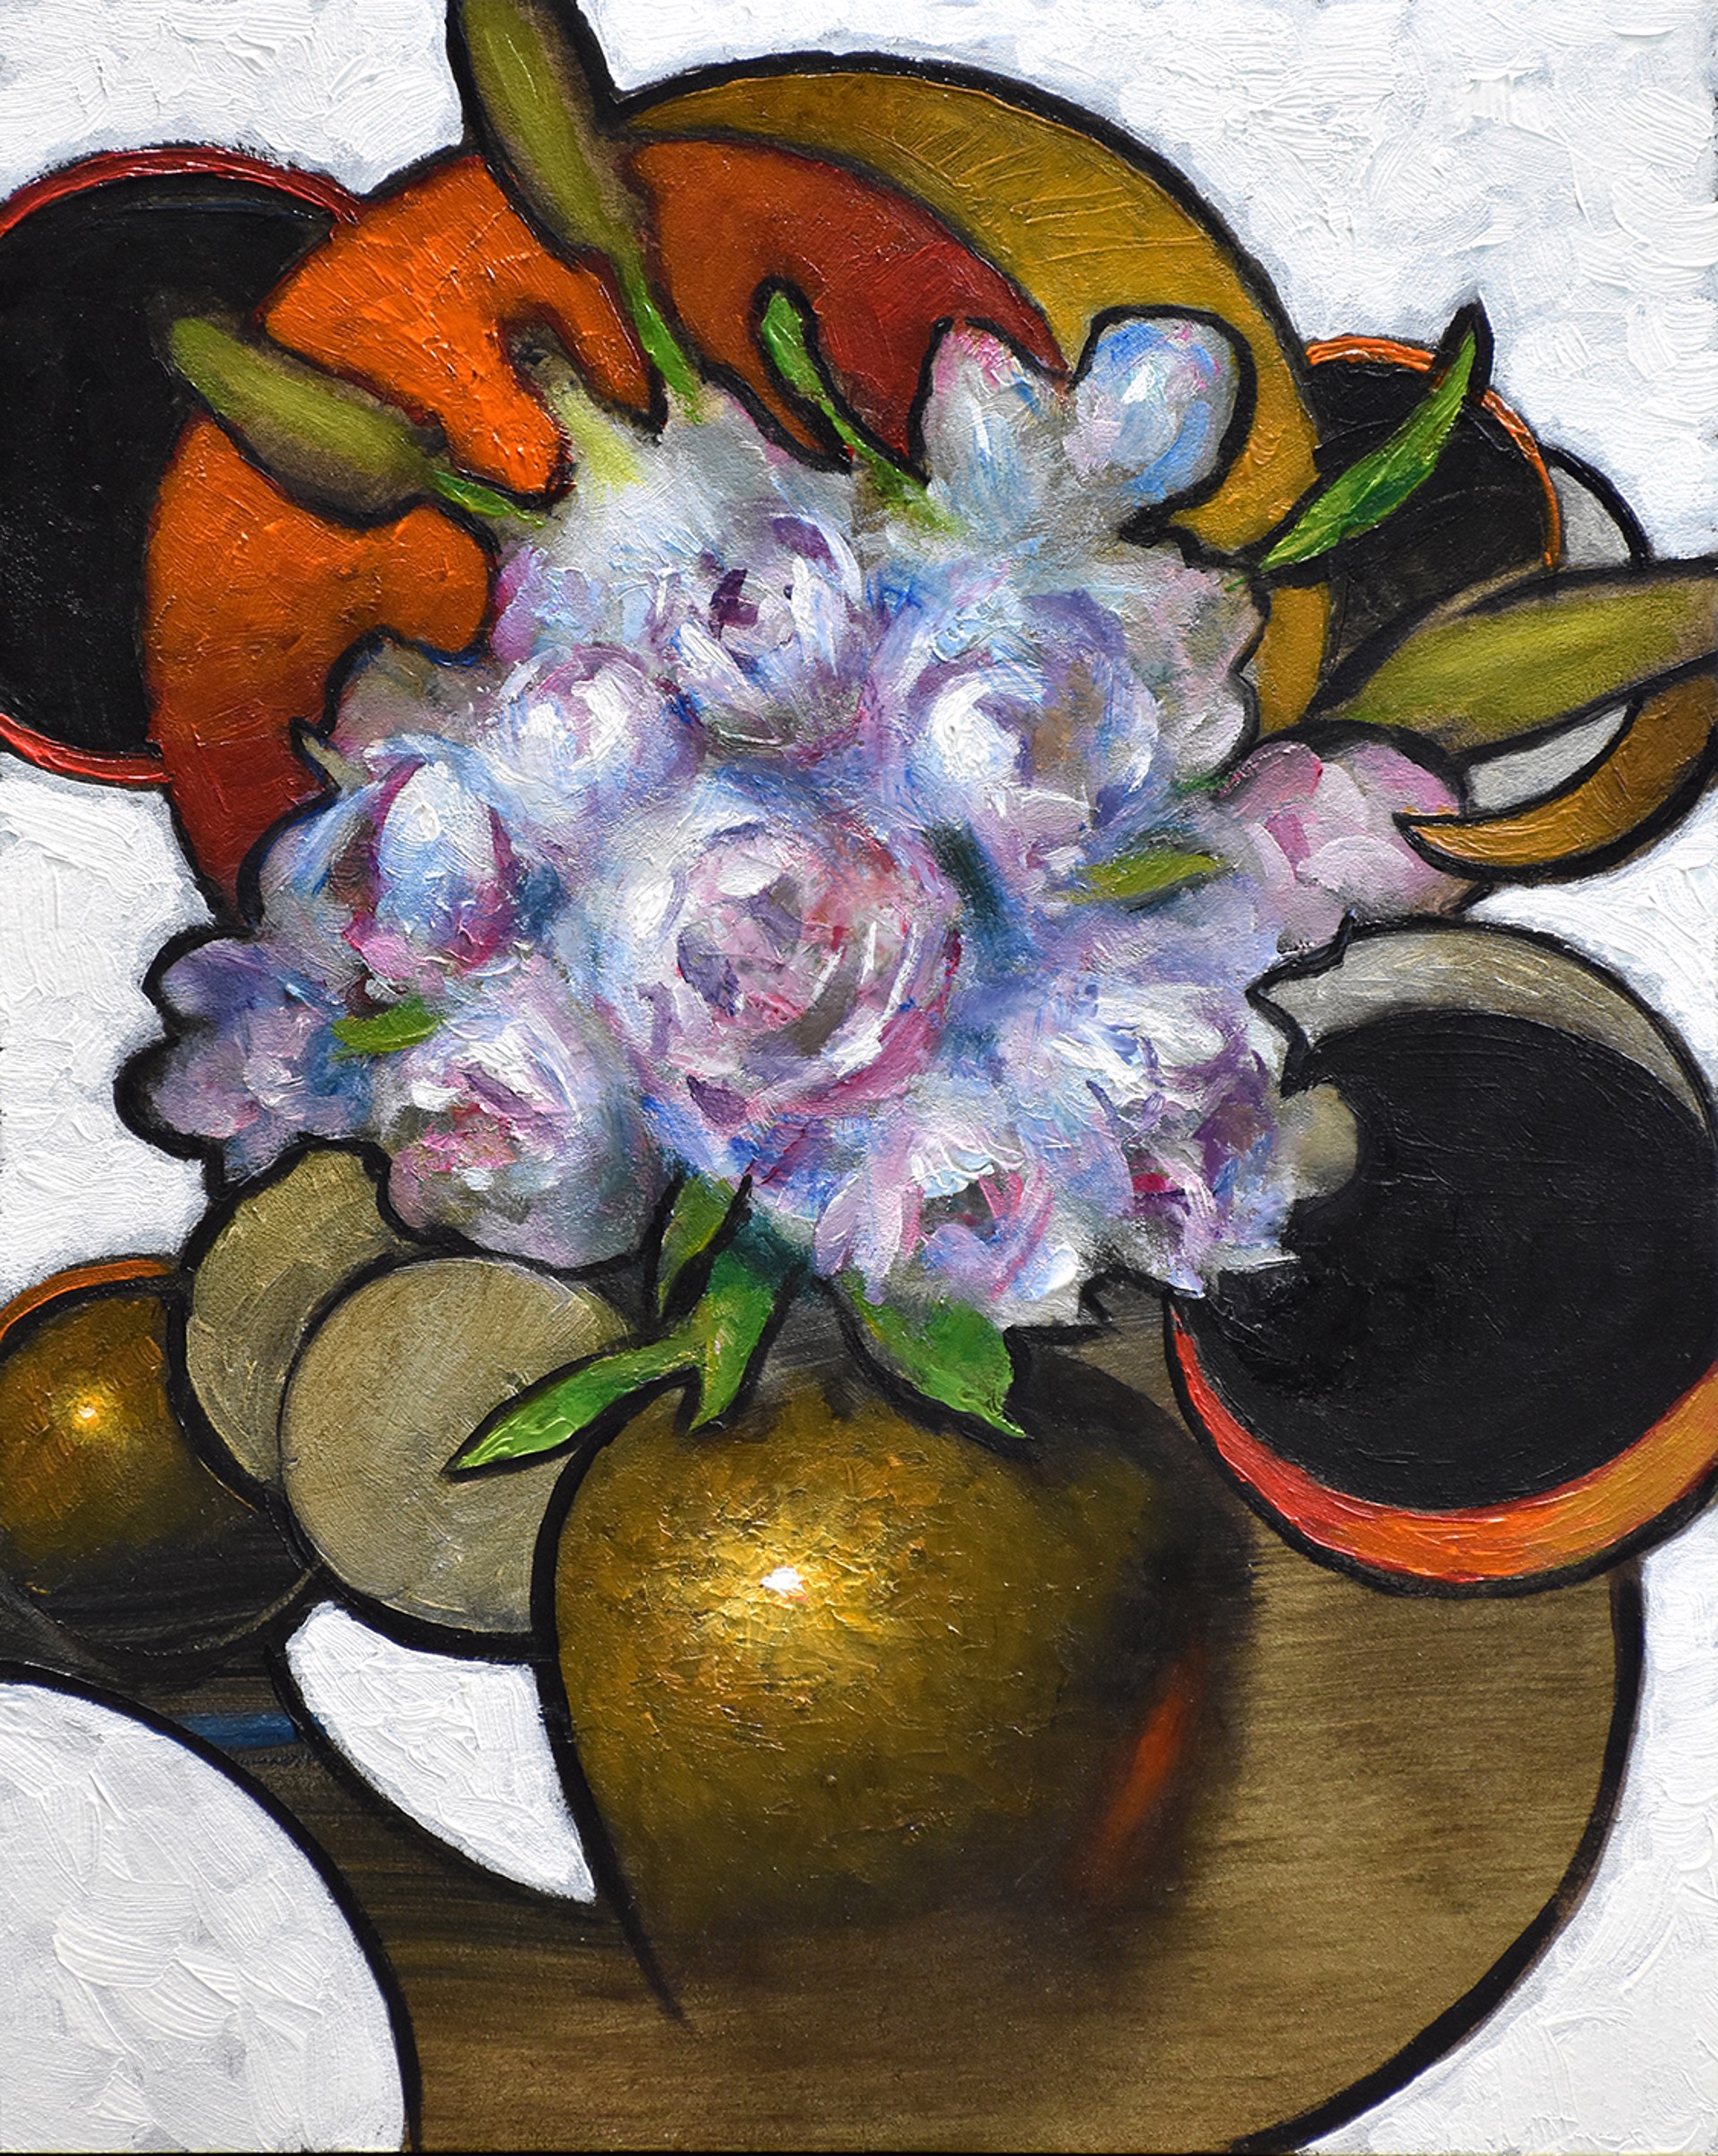 Jeff Legg, OPAM "Celestial Bouquet" by Oil Painters of America